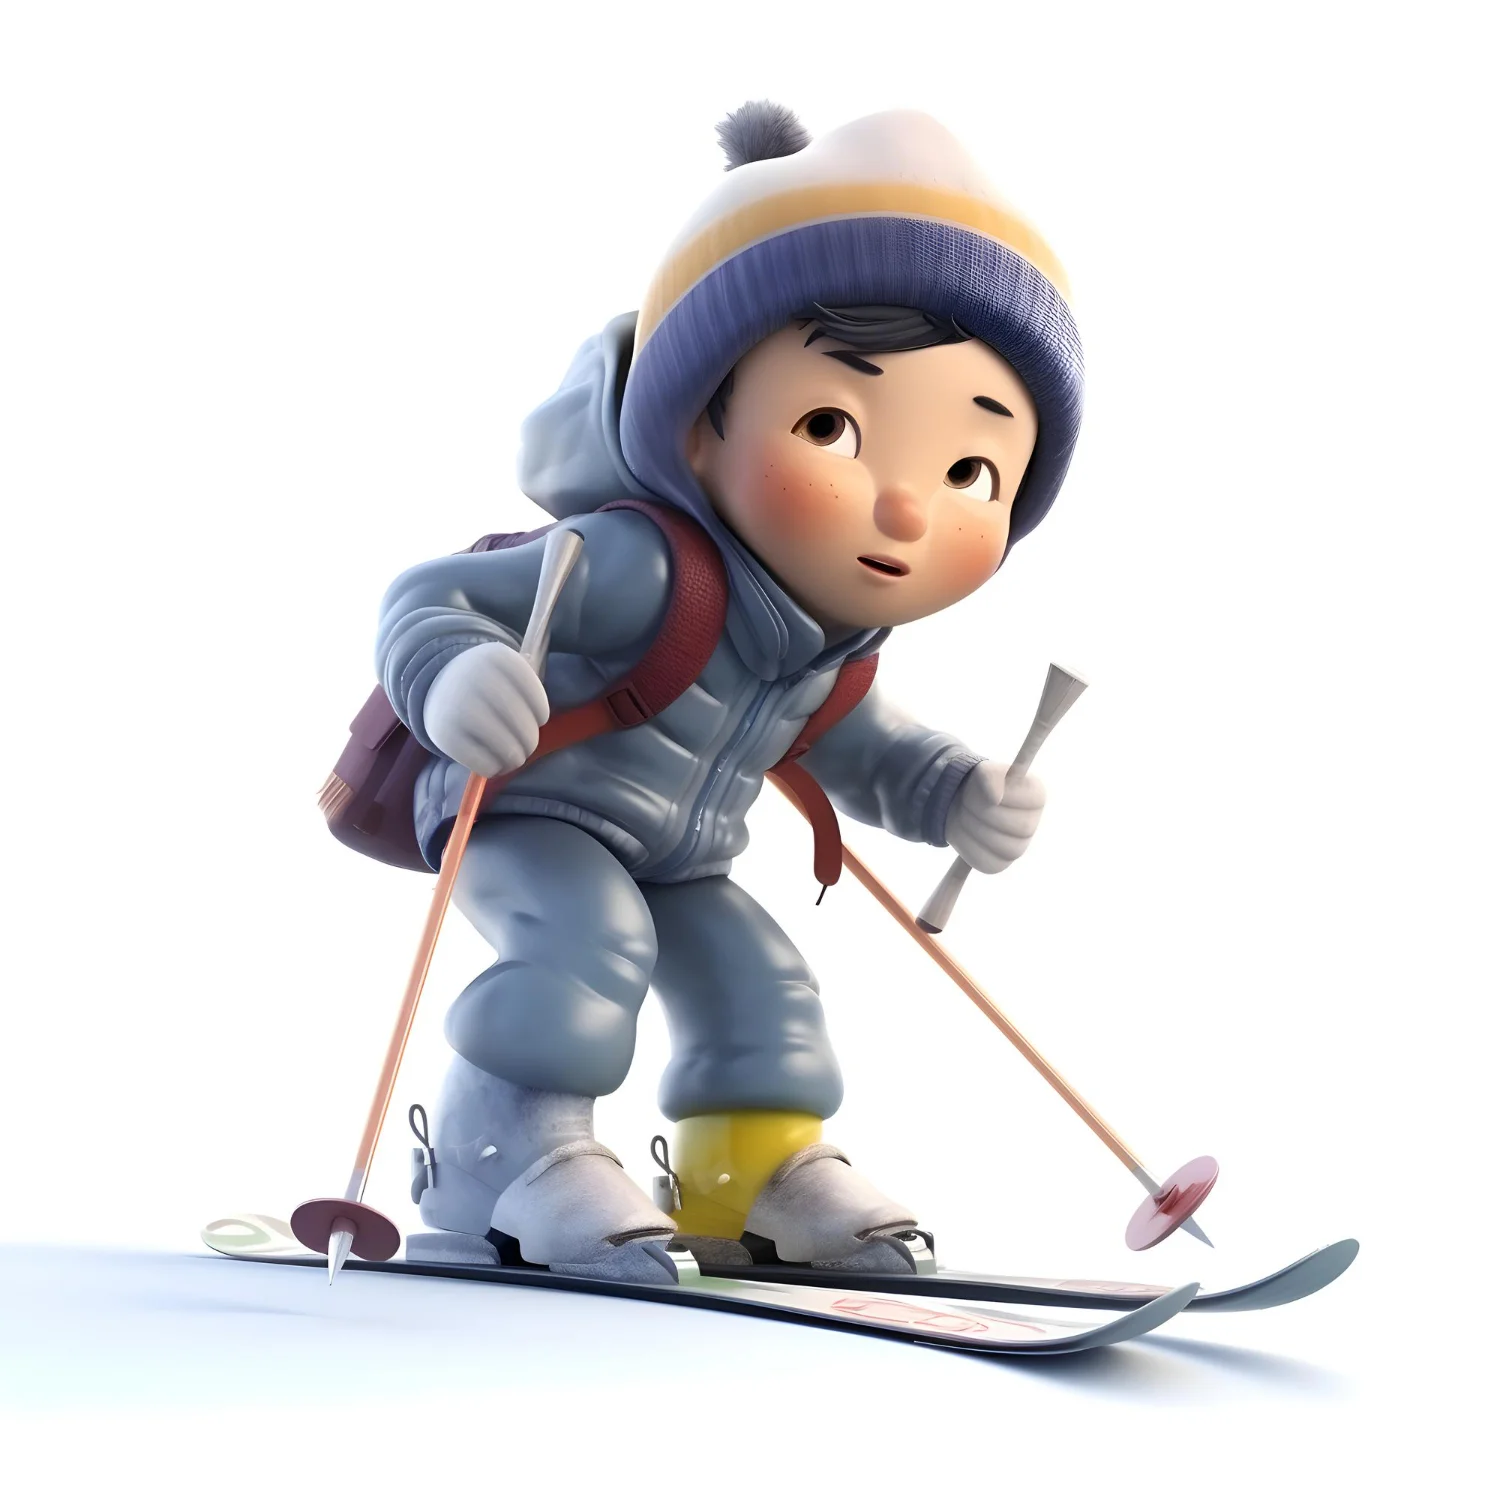 A Little Skier